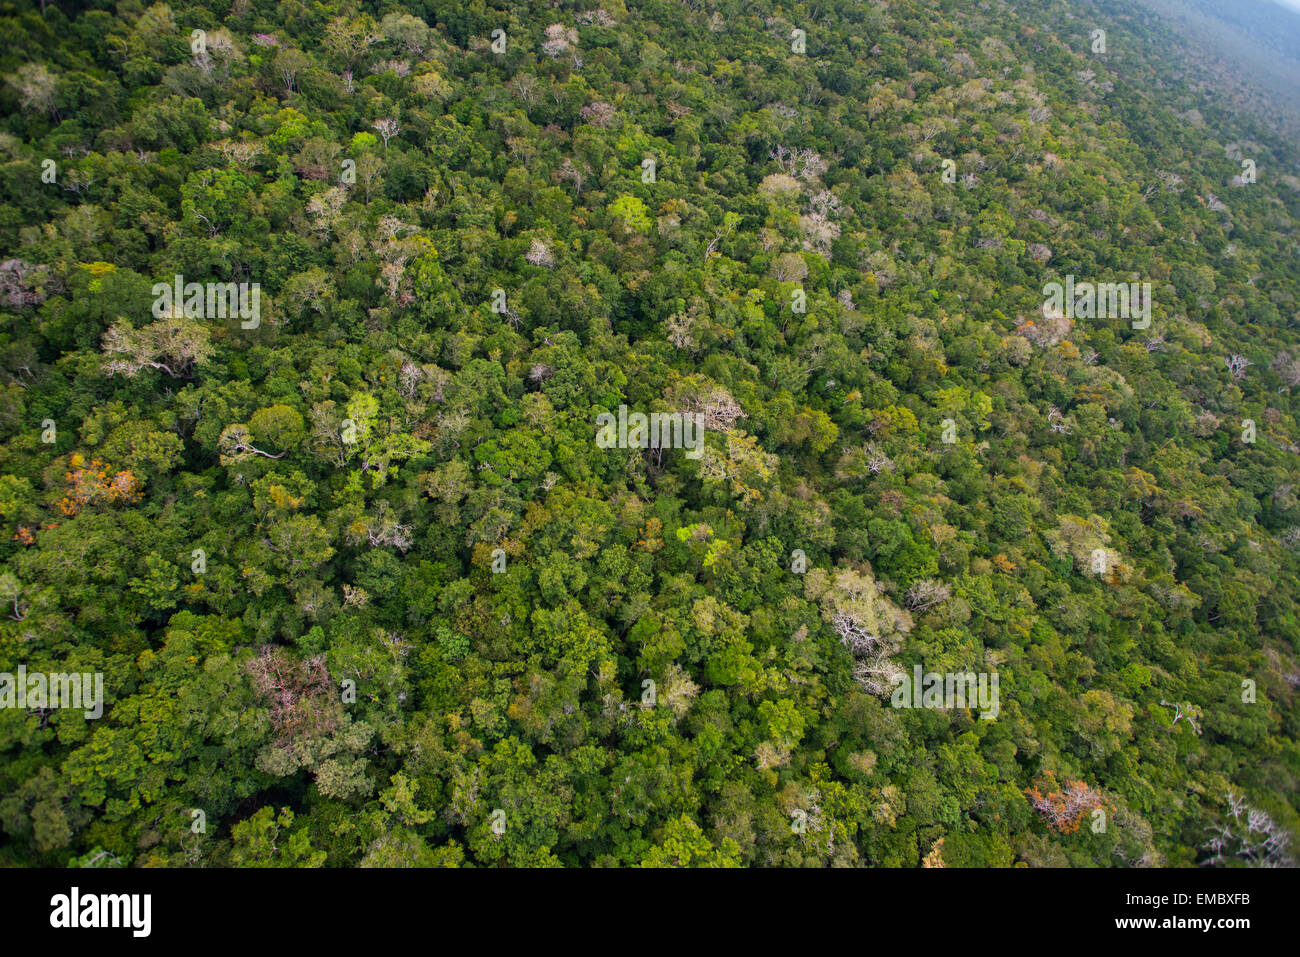 Vista aérea de la Reserva de la Biosfera Maya de Guatemala. Foto de stock